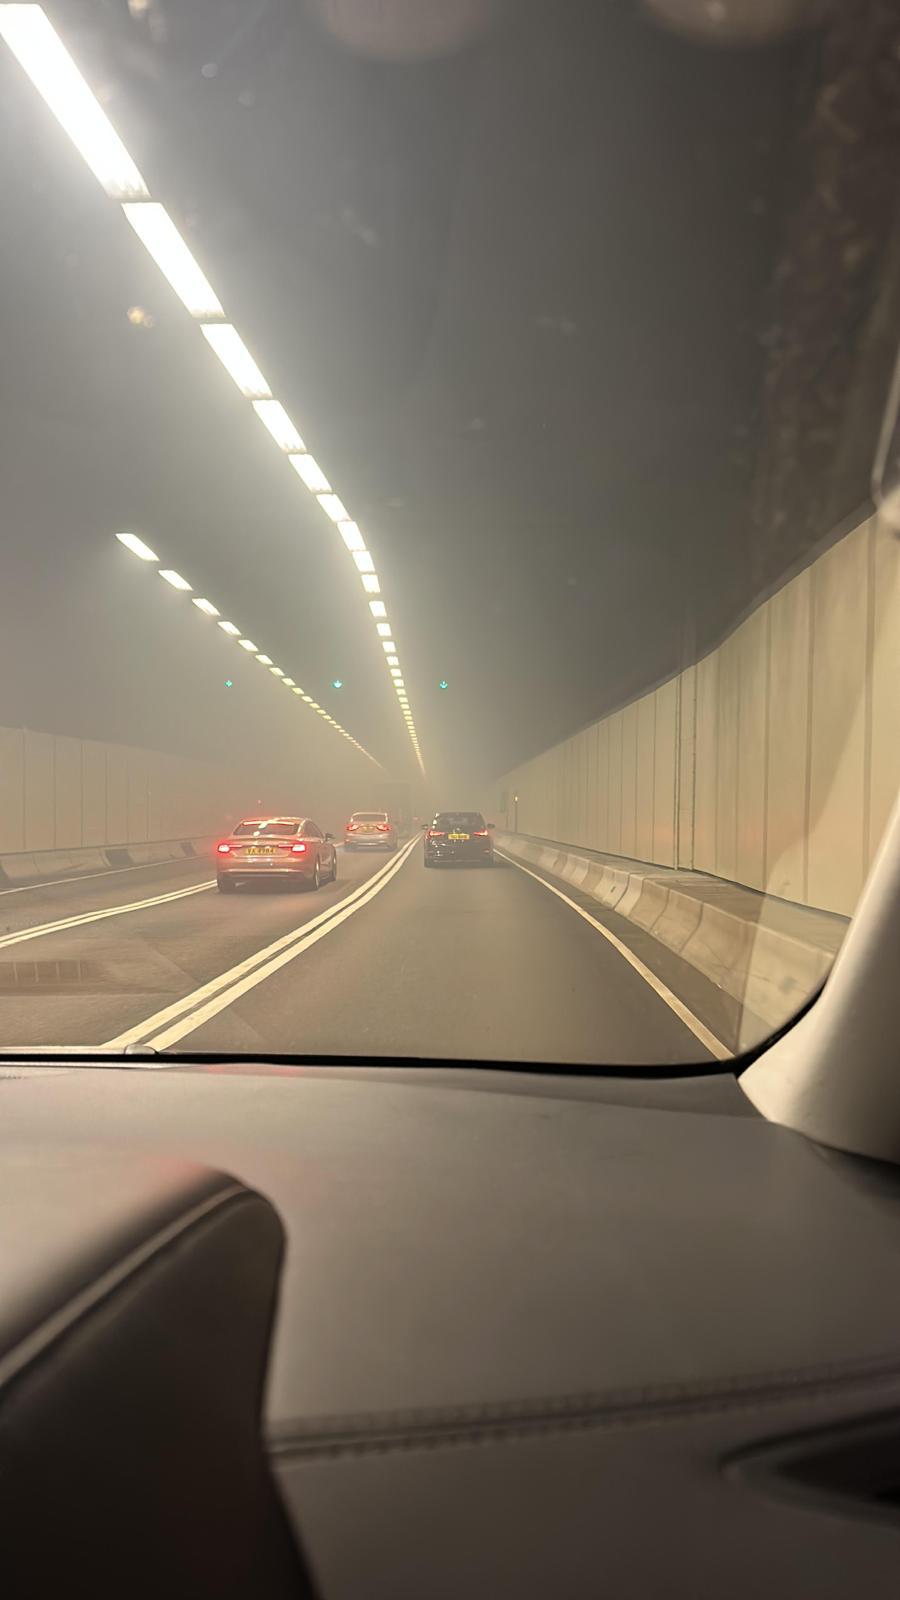 西隧管道内烟雾弥漫。网上图片